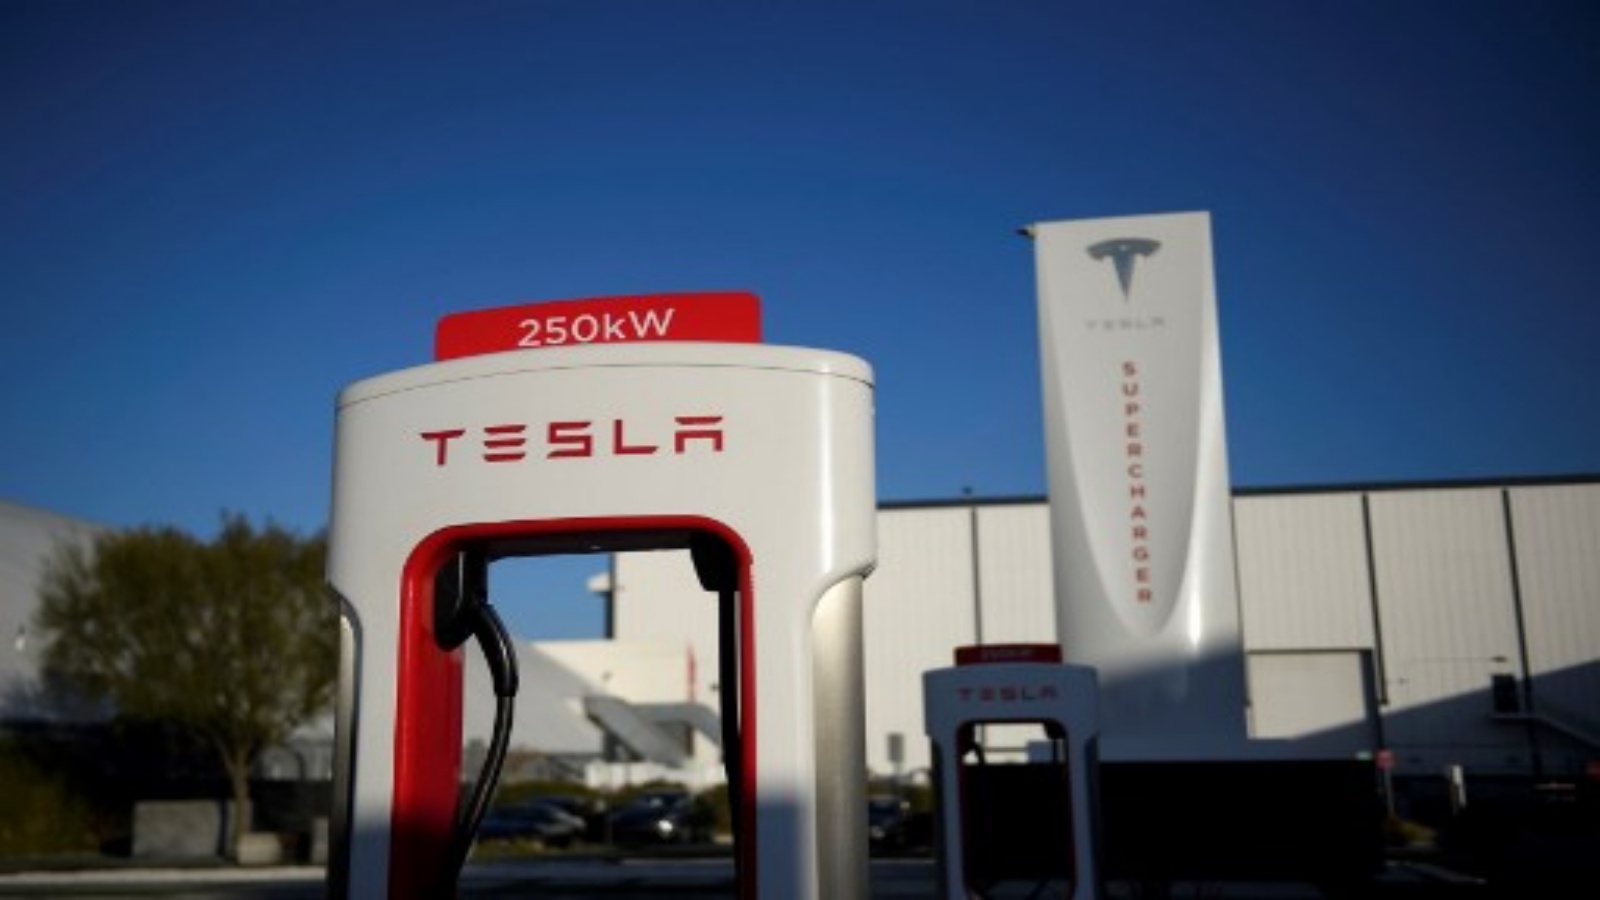 شعار Tesla على محطة شحن سيارة كهربائية بقدرة 250 كيلو وات في محطة شاحن Tesla Inc. في 4 يناير 2021 في هوثورن ، كاليفورنيا. بعد ارتفاع الأسهم في عام 2020 مع ارتفاع عمليات تسليم السيارات ، تدخل تسلا عام 2021 مع الكثير من الزخم حتى مع بقاء رؤيتها في جعل السيارات الكهربائية سائدة بعيدً